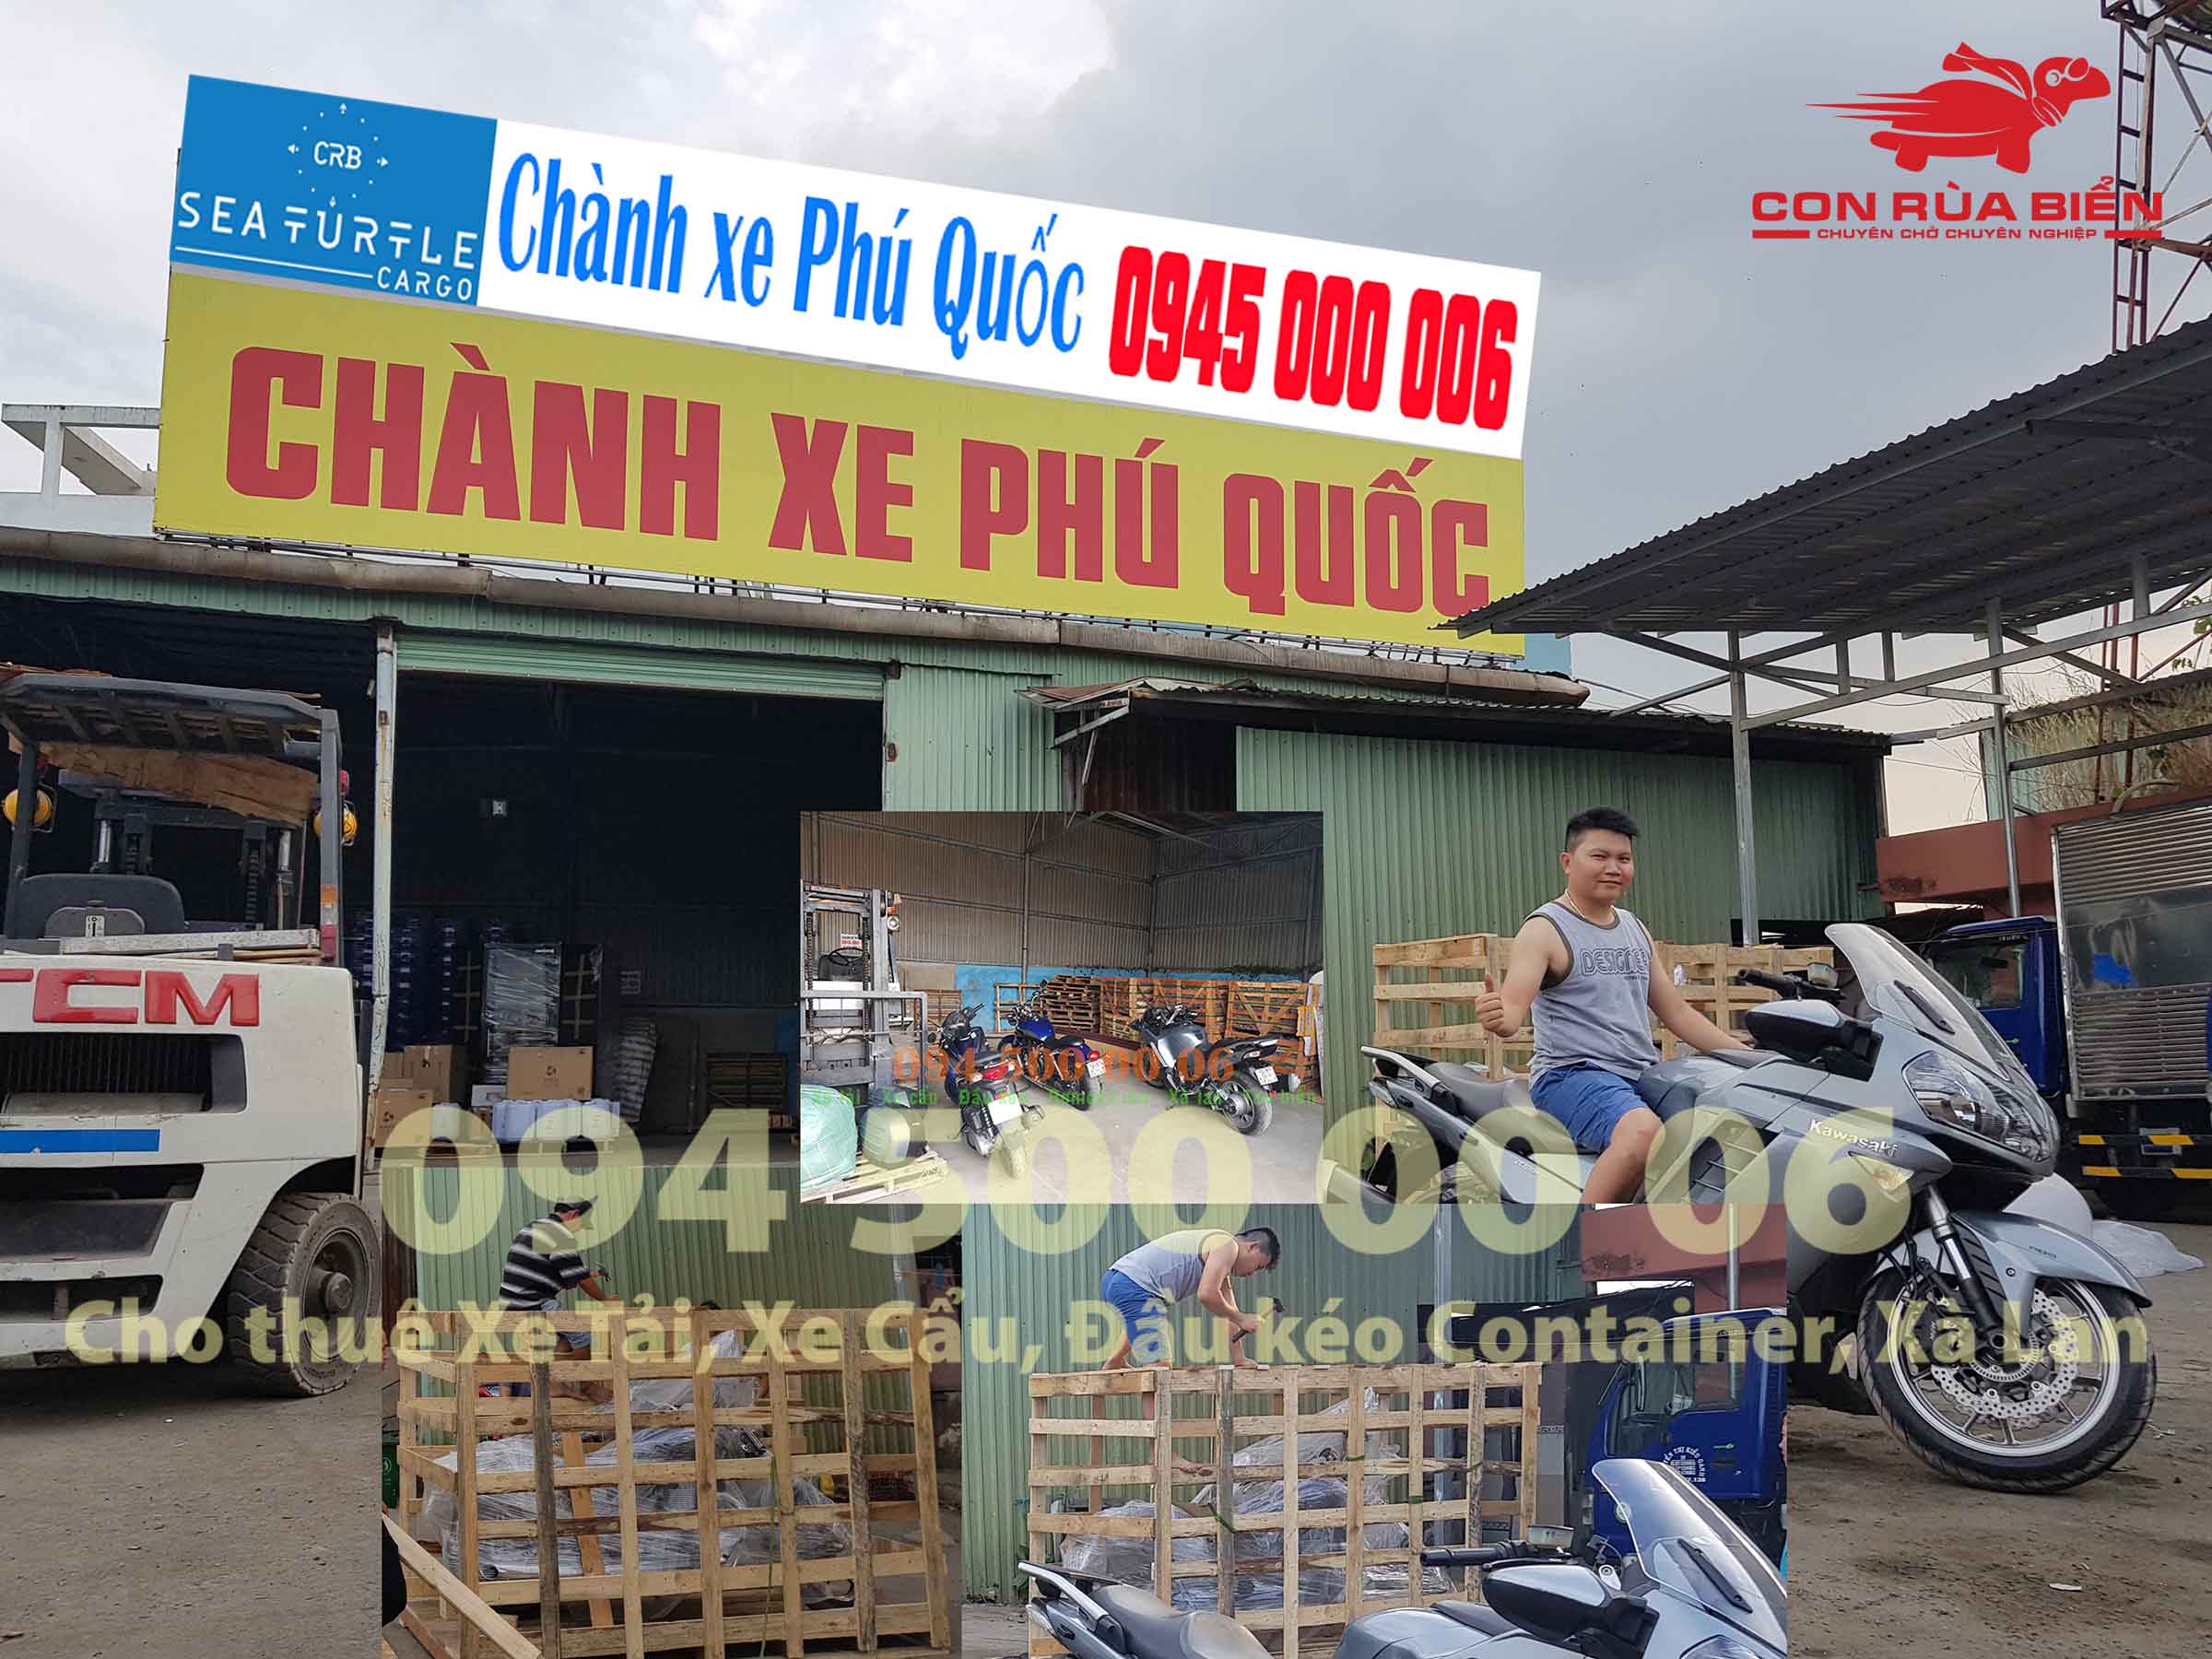 Du an Van chuyen xe may di Phu Quoc 49